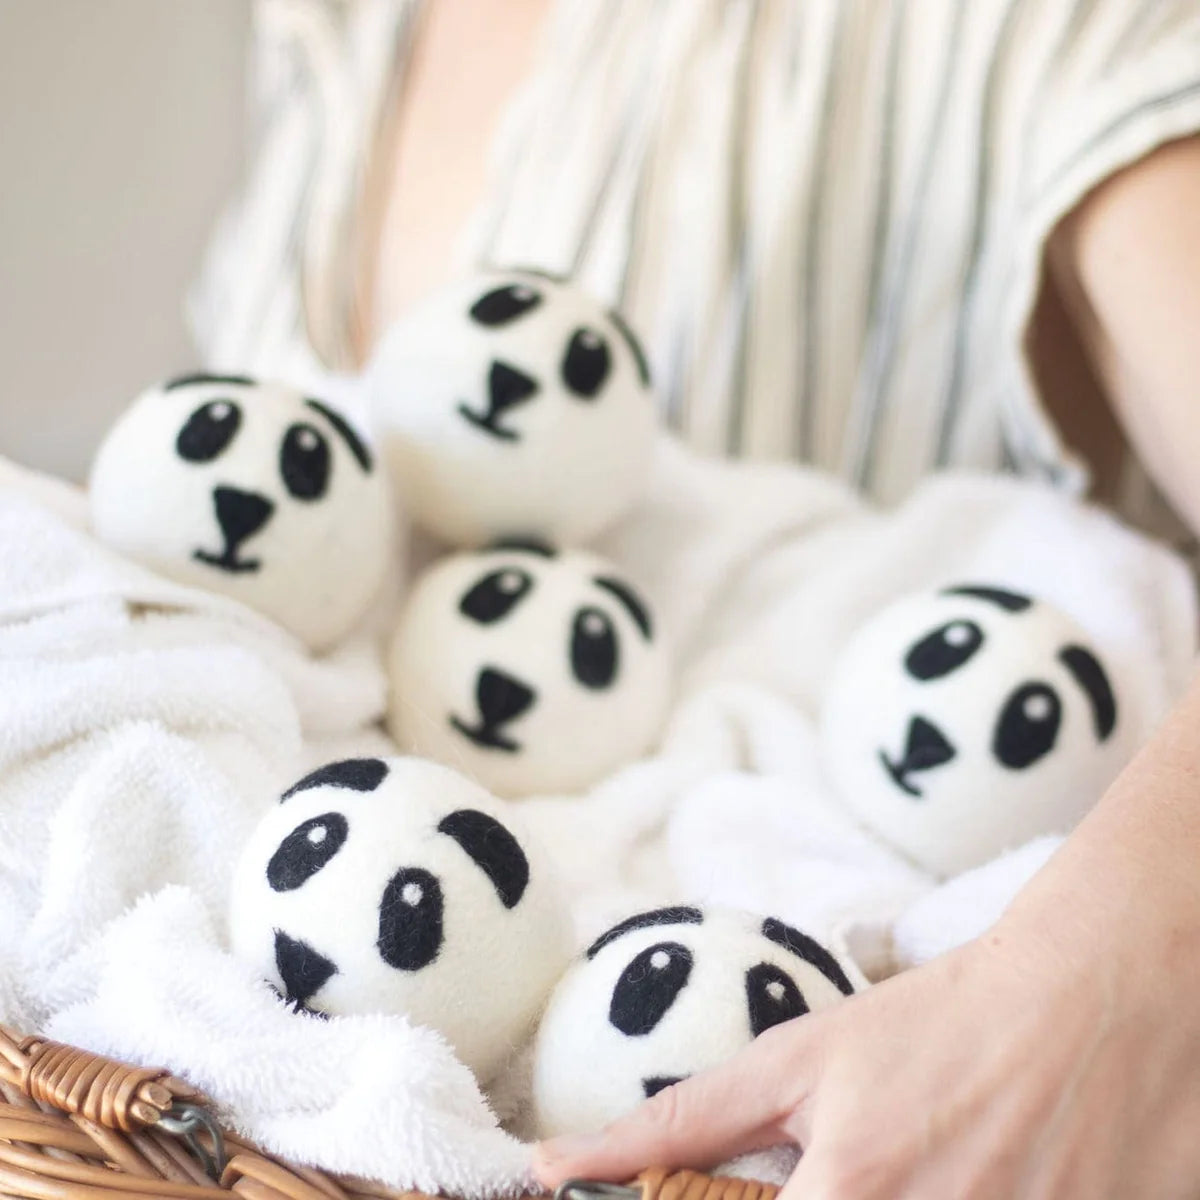 Eco Dryer Ball - Panda